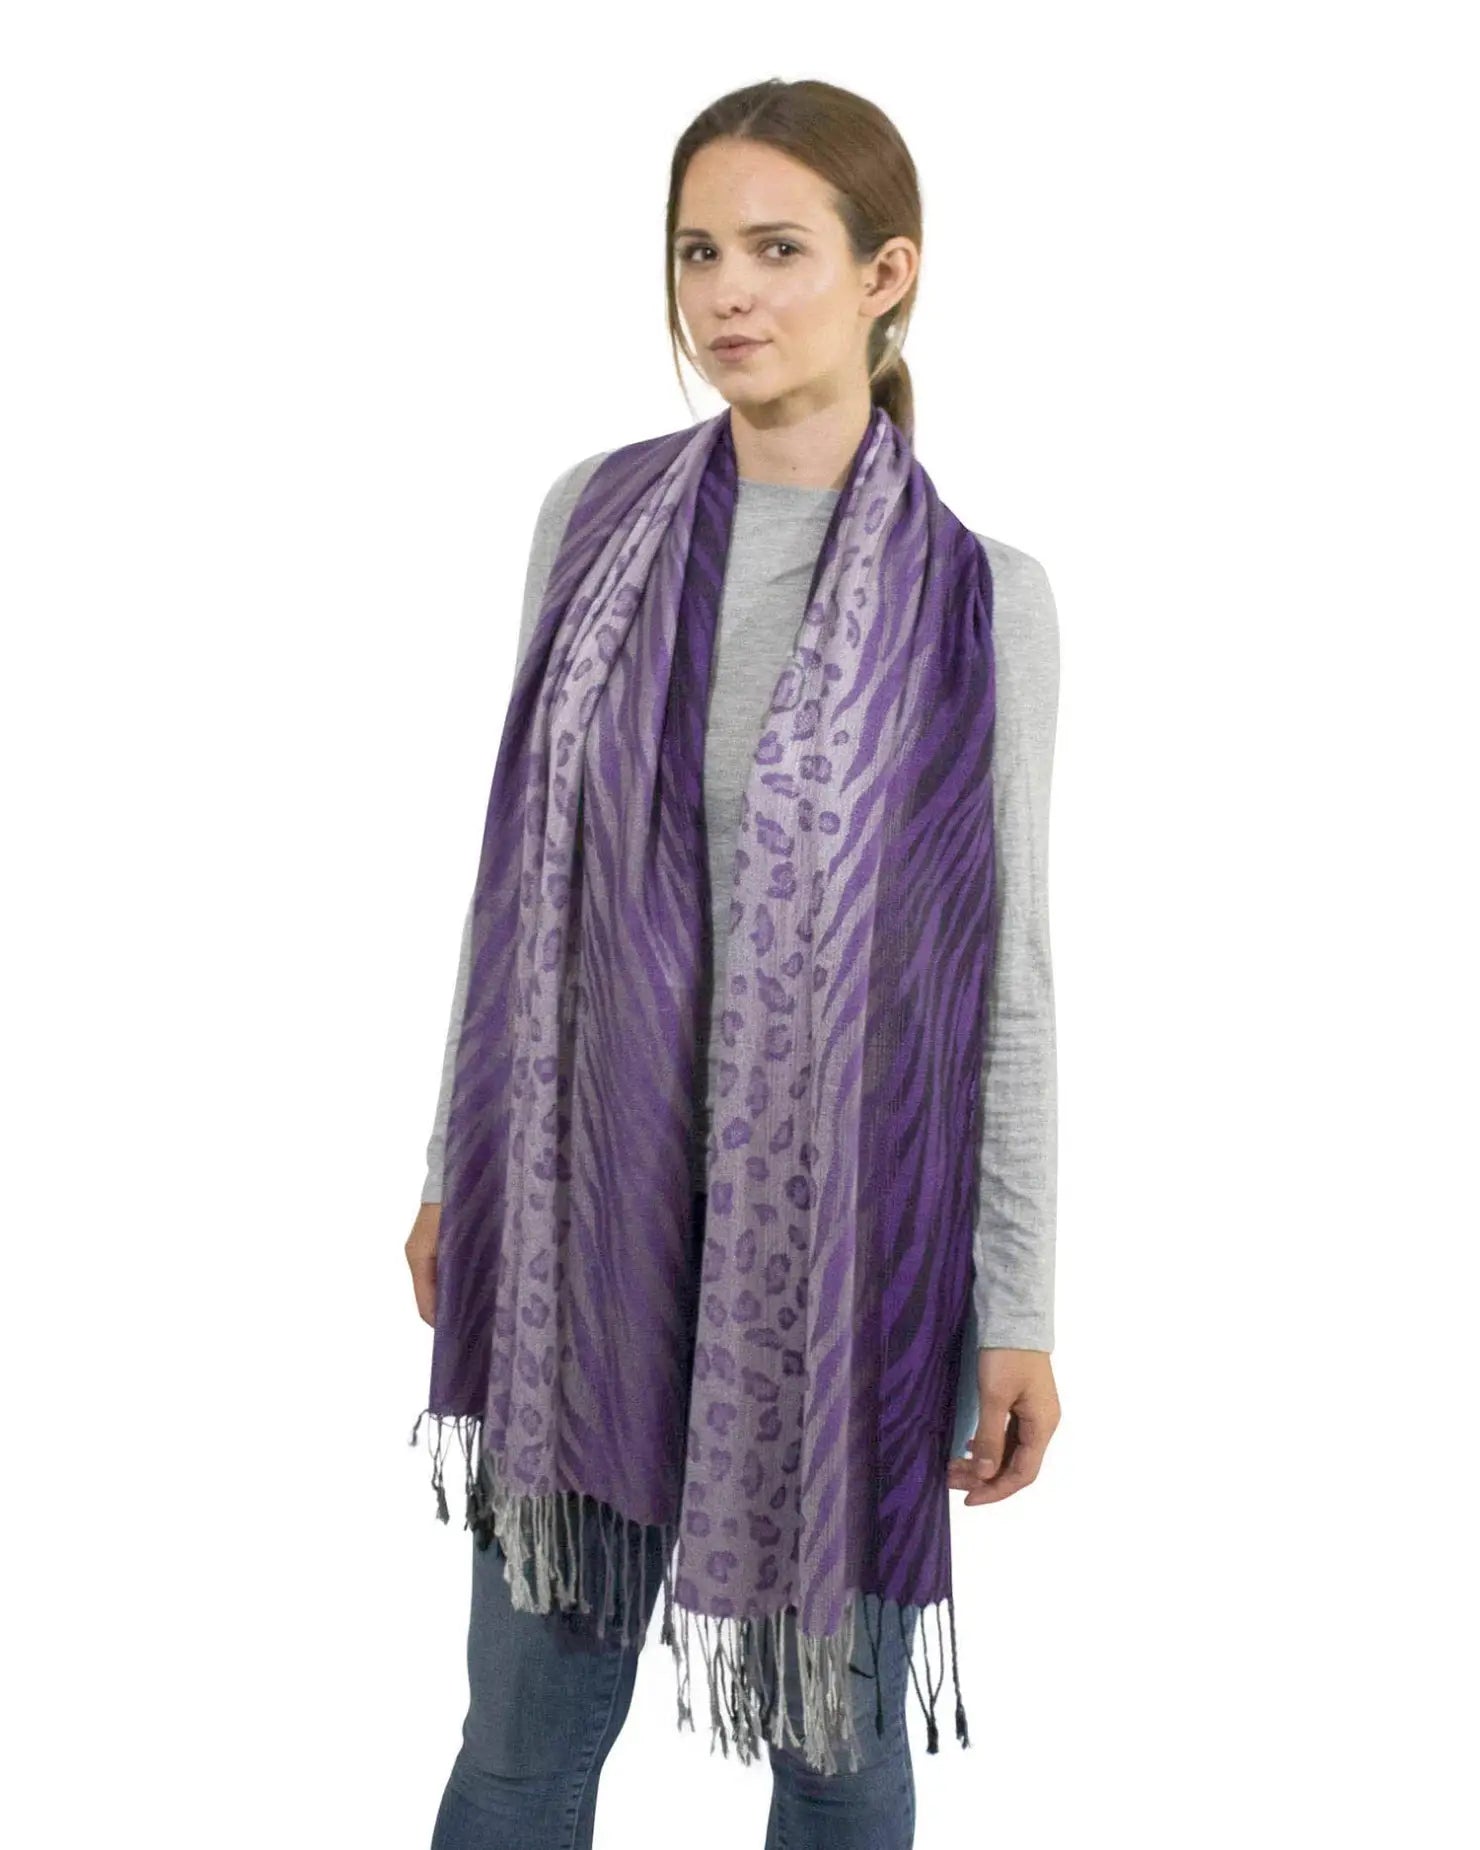 Purple leopard print tasselled scarf worn by woman